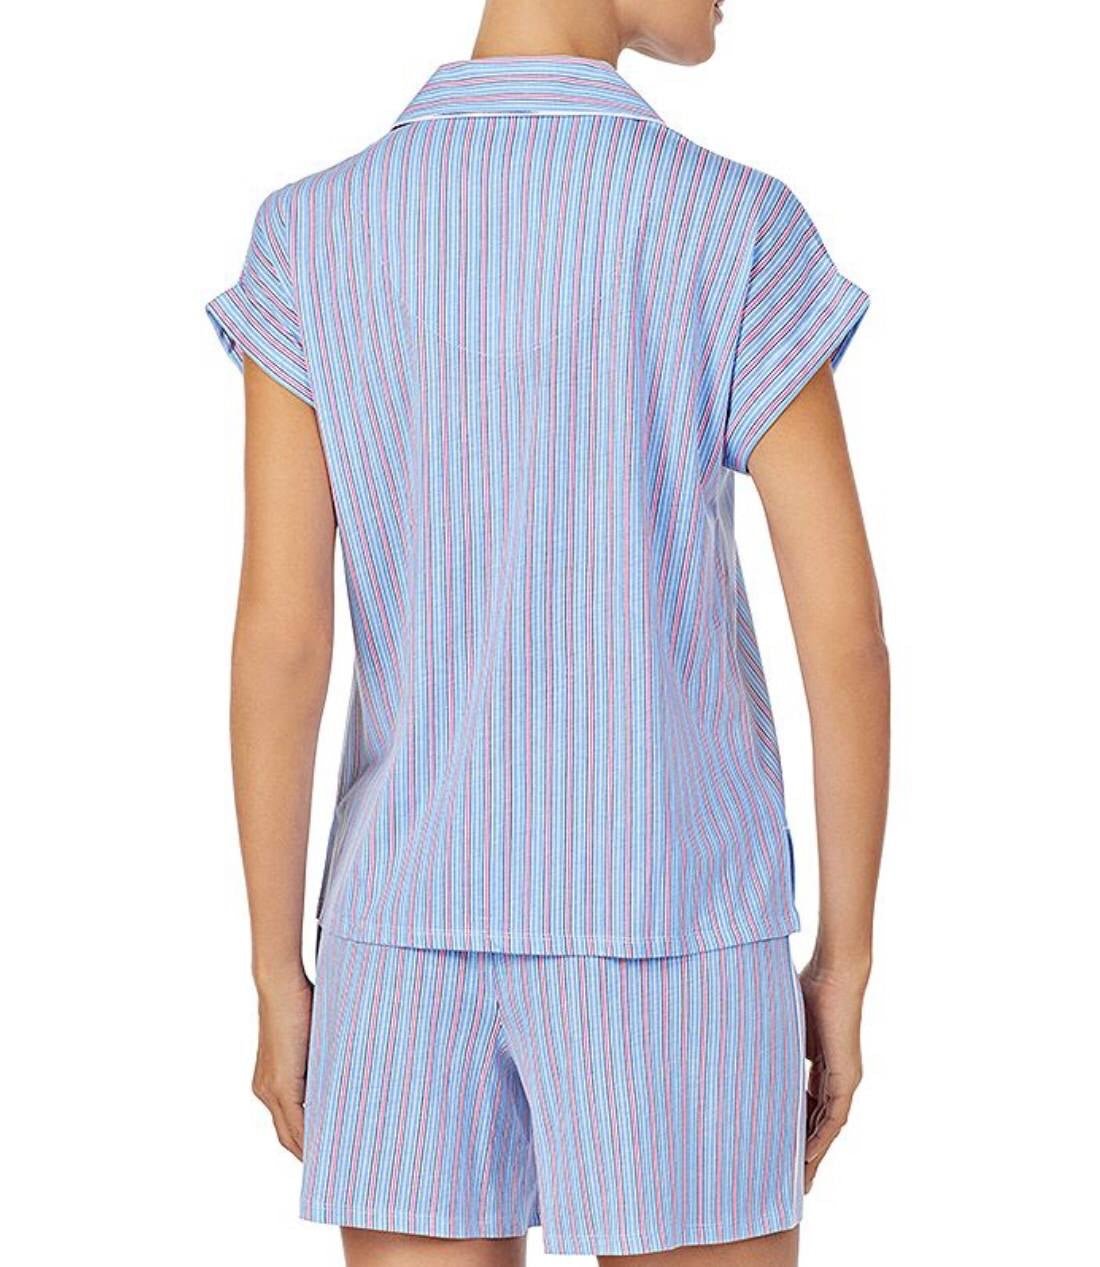 Ralph Lauren has pajama set